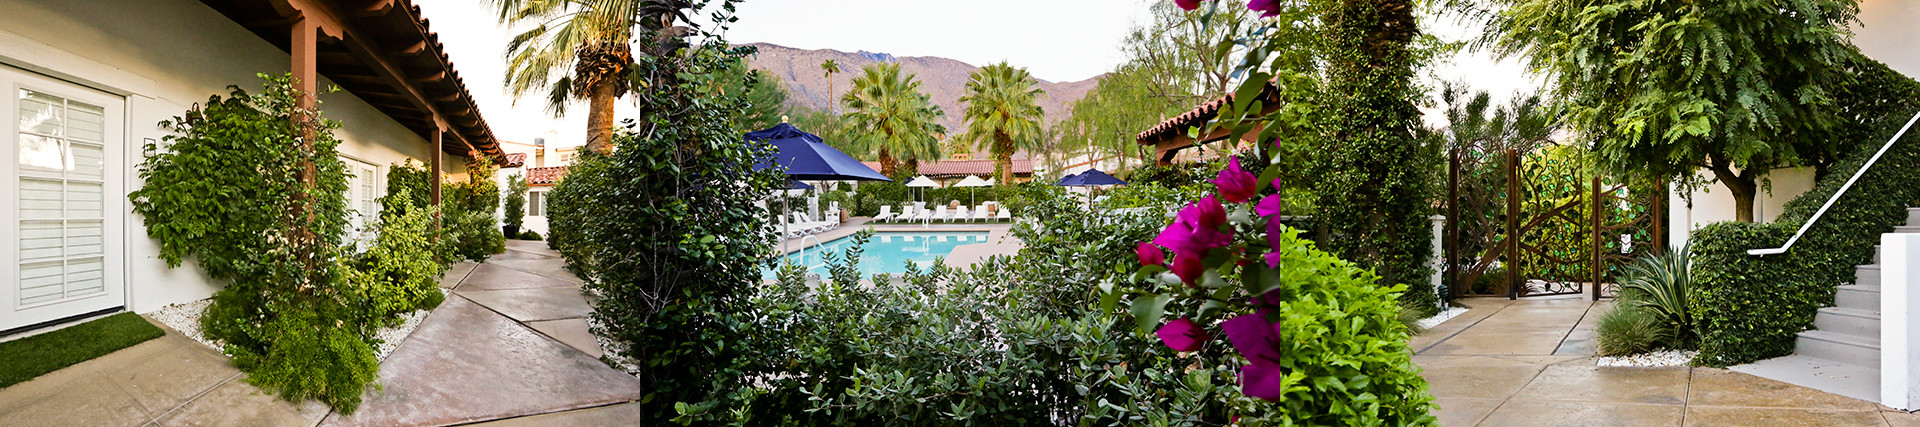 Alcazar Hotel Palm Springs 4